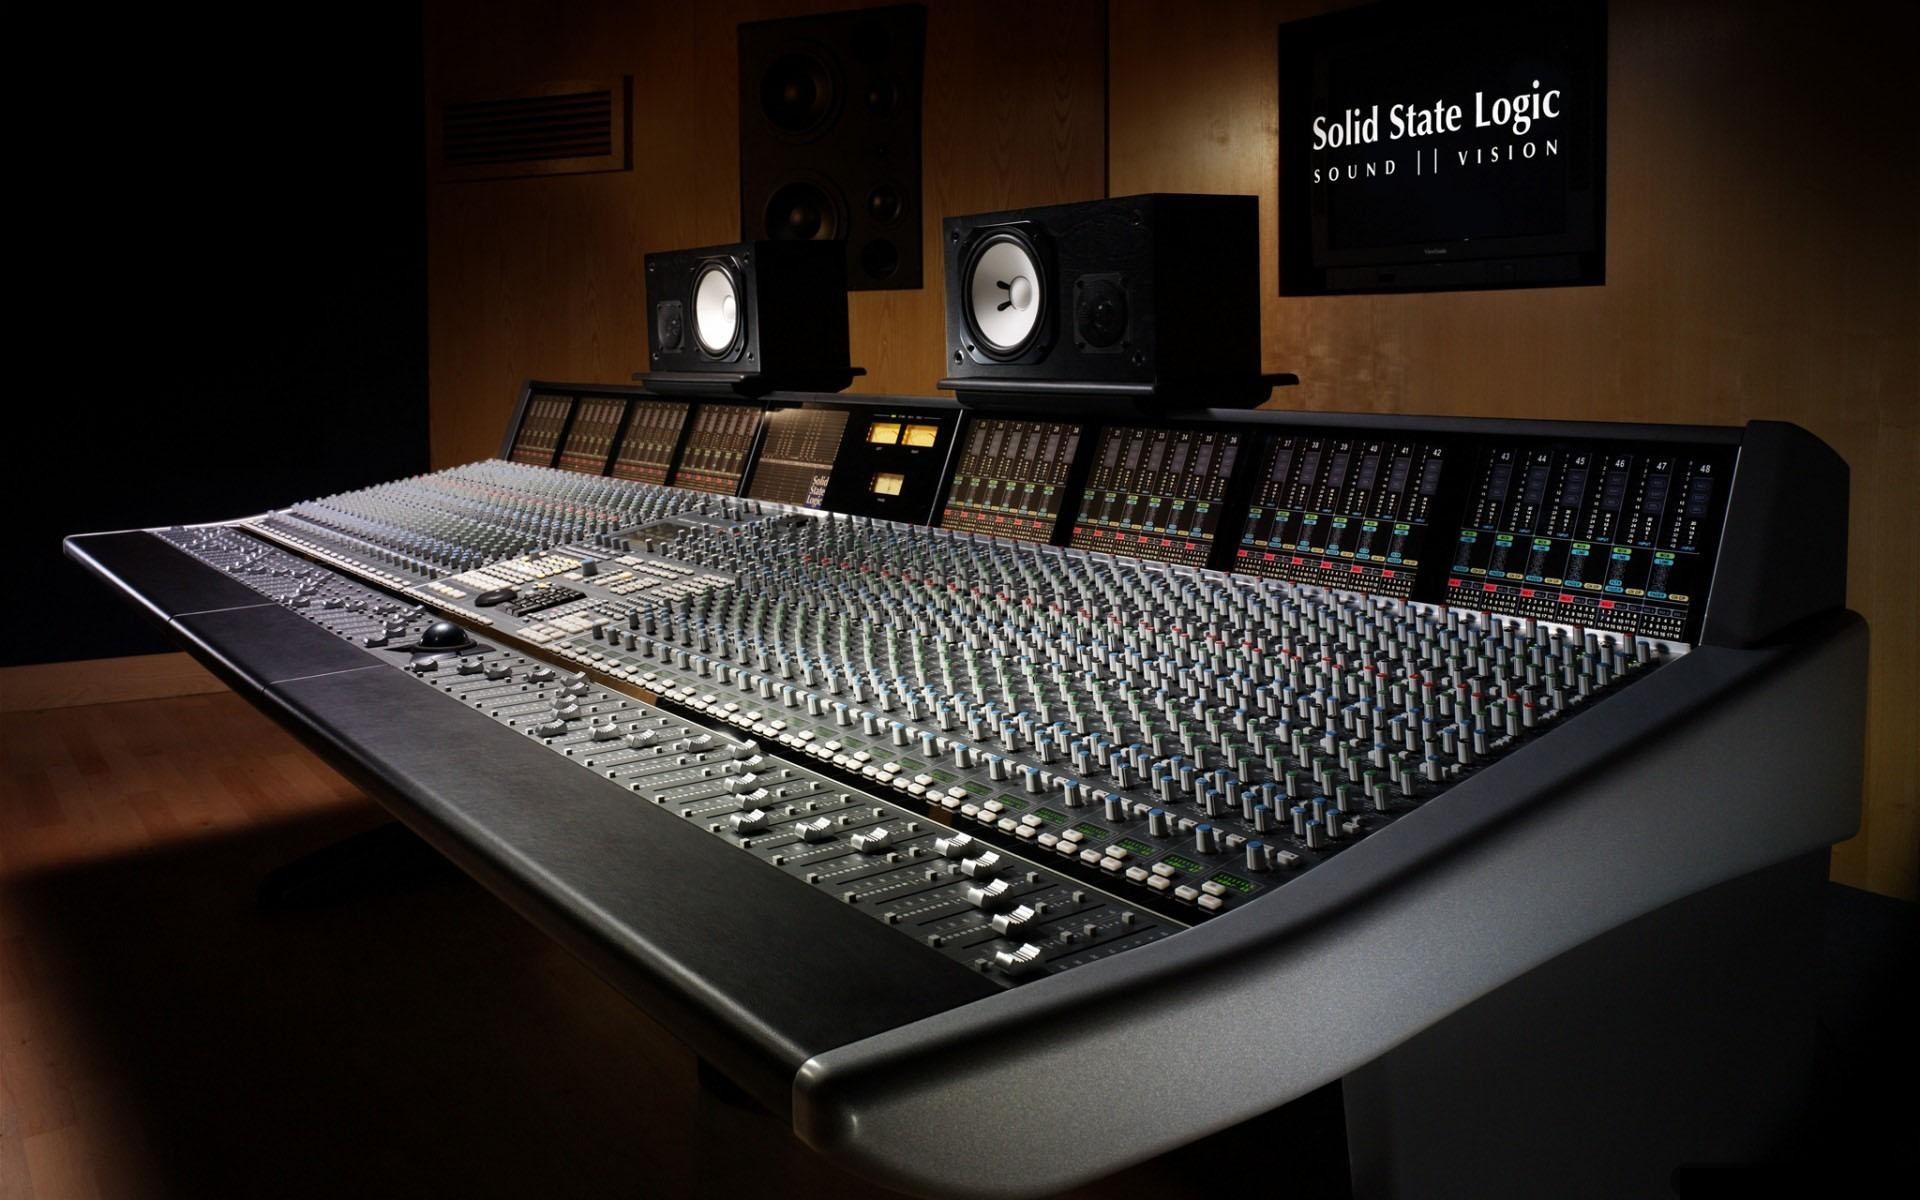 studio wallpaper hd,equipaggiamento audio,studio di registrazione,ingegnere audio,tecnologia,studio